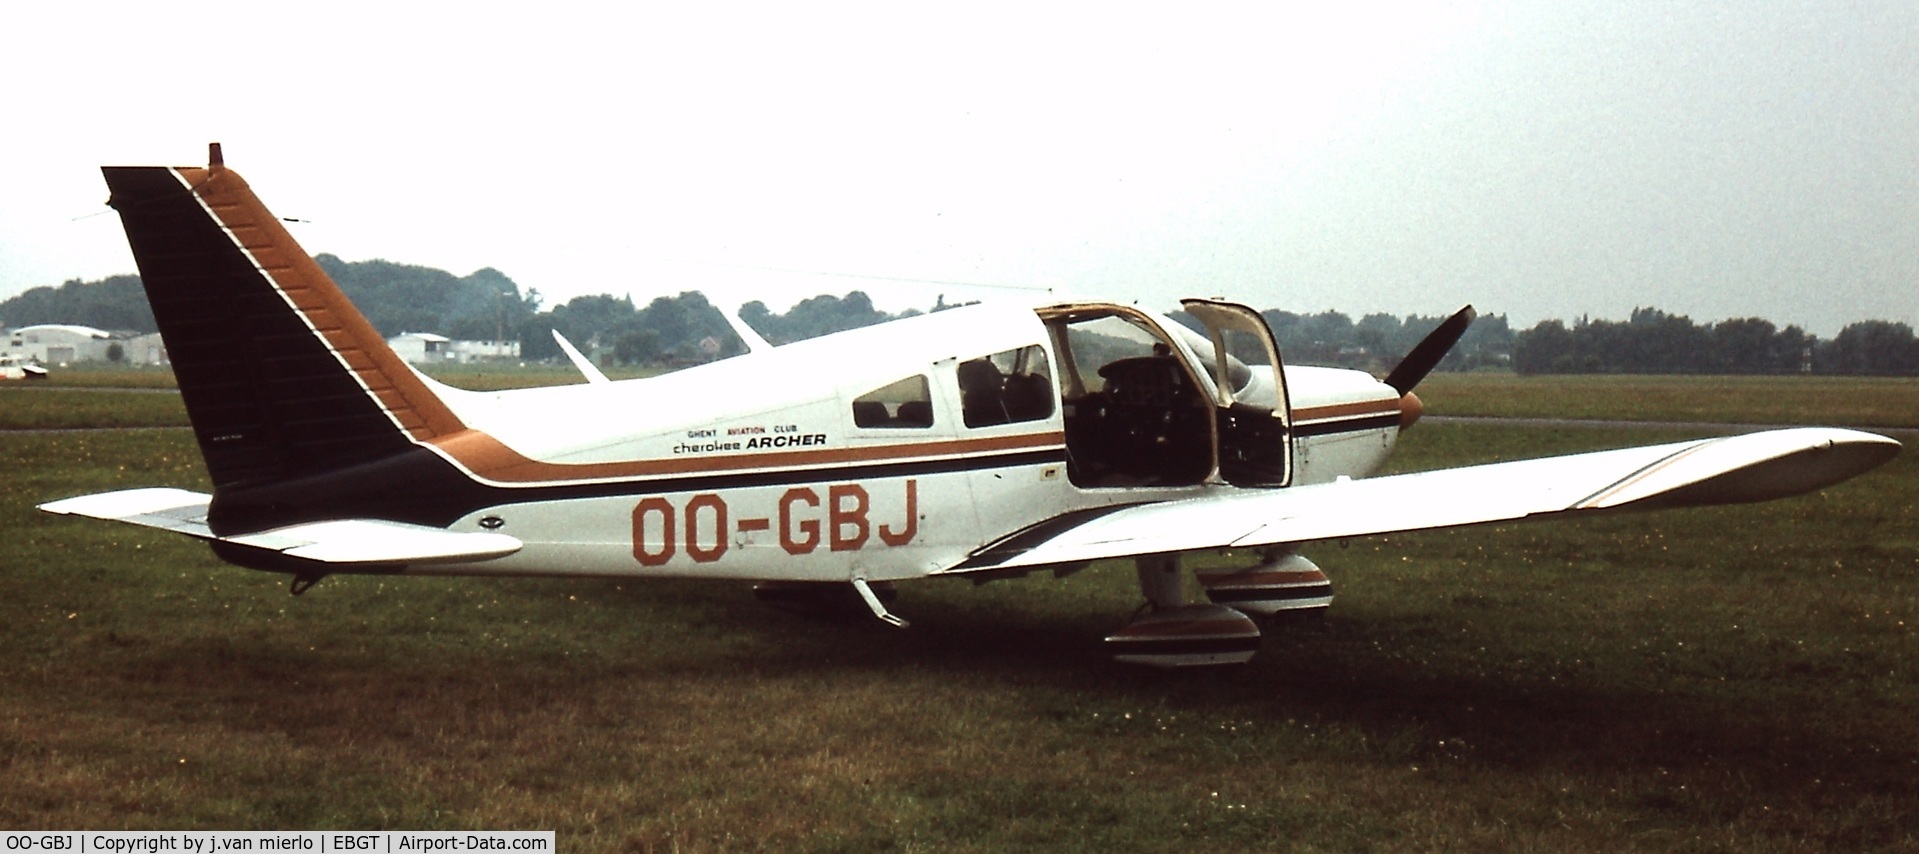 OO-GBJ, 1975 Piper PA-28-180 Cherokee C/N 28-7505246, Ghent, Belgium end '70s